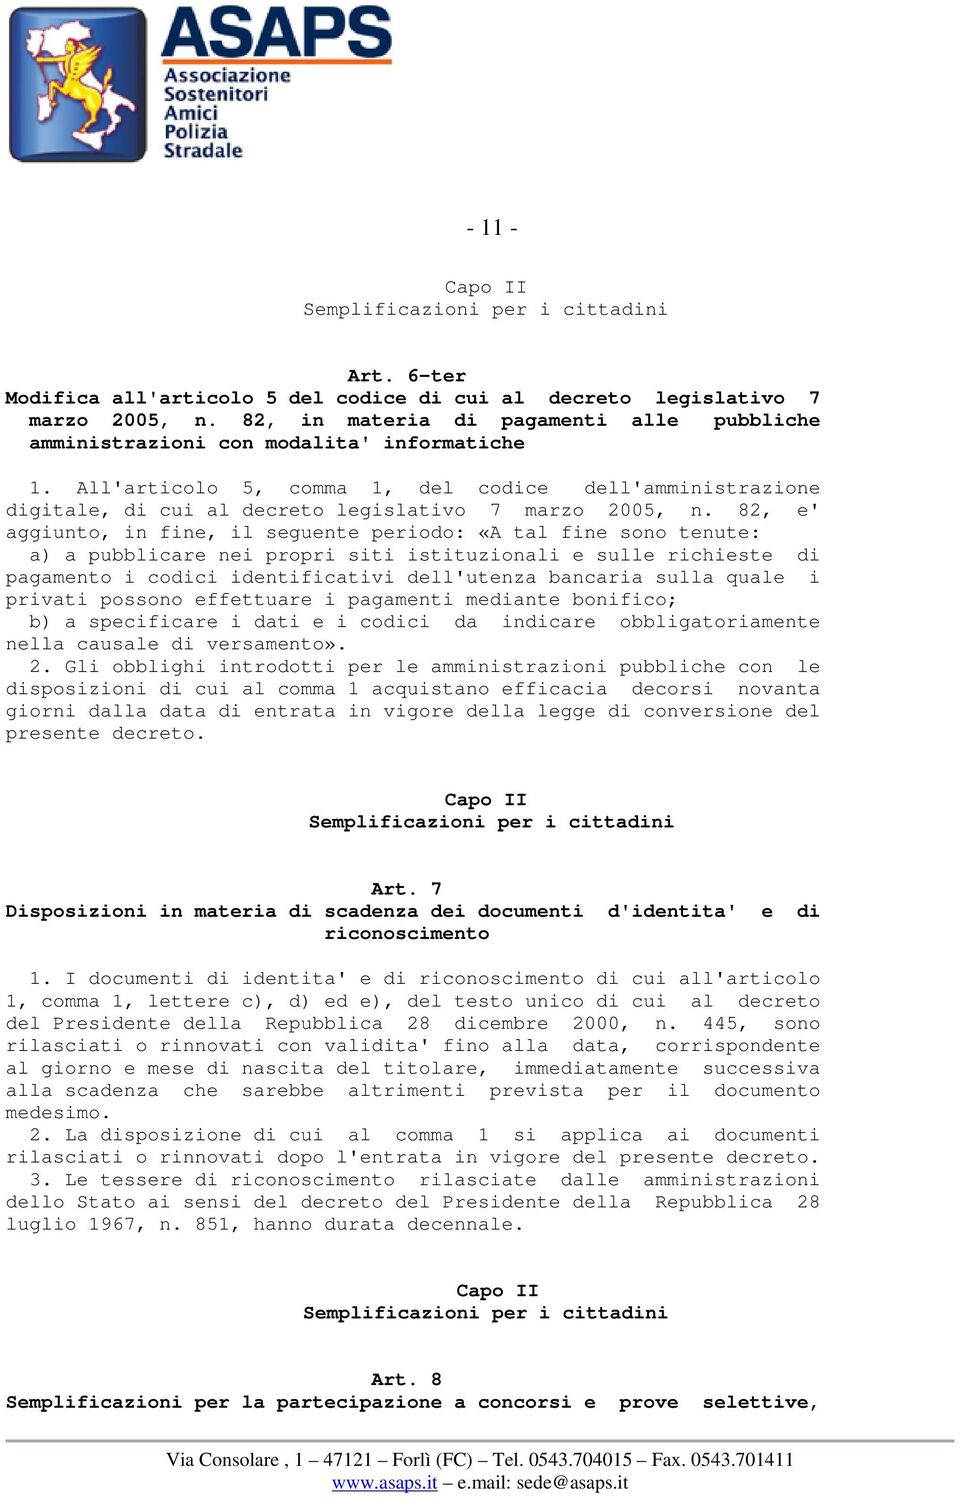 All'articolo 5, comma 1, del codice dell'amministrazione digitale, di cui al decreto legislativo 7 marzo 2005, n.